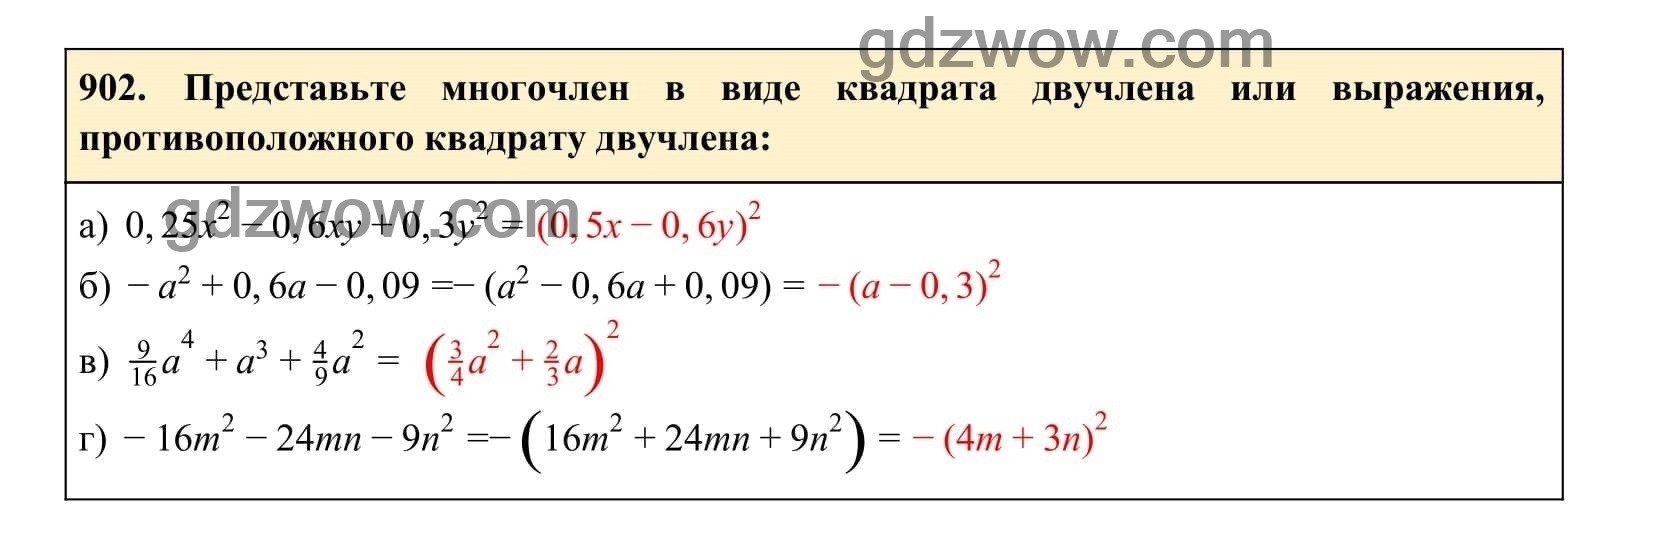 Упражнение 902 - ГДЗ по Алгебре 7 класс Учебник Макарычев (решебник) - GDZwow